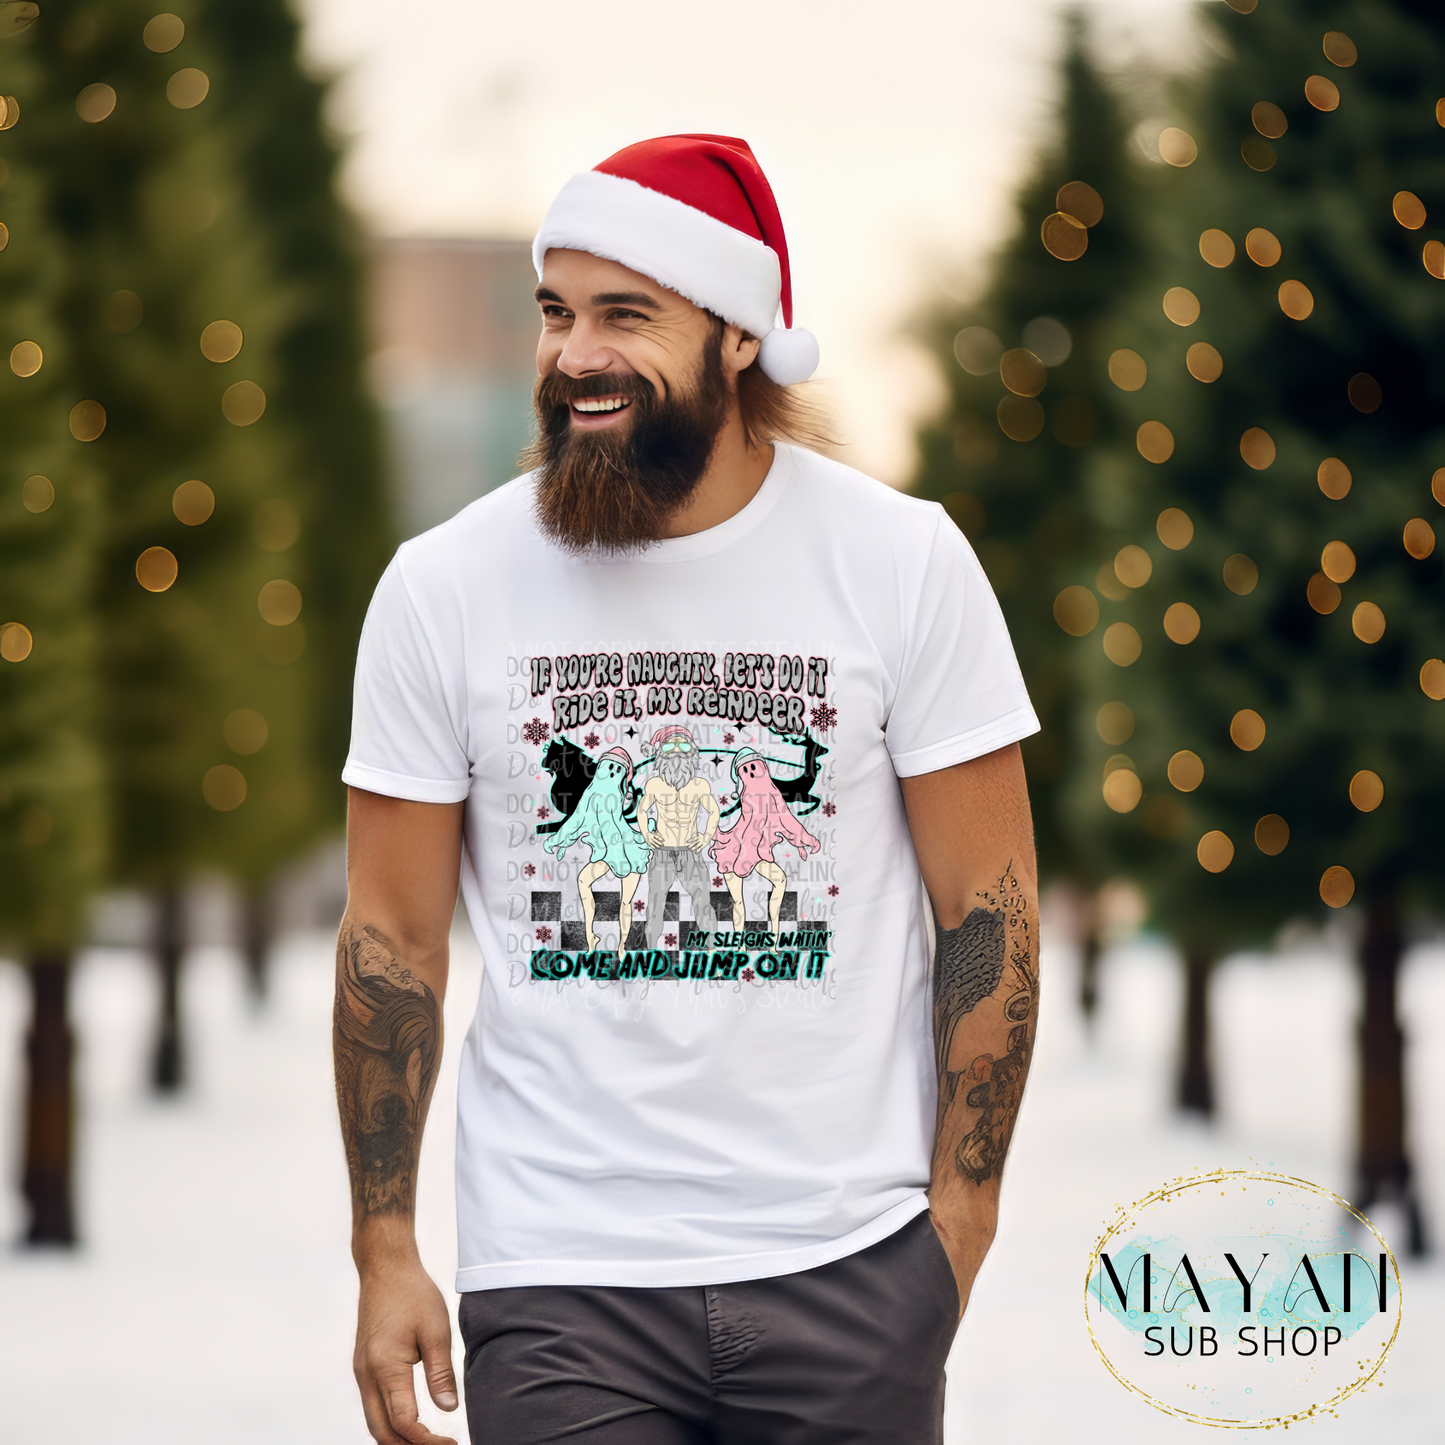 Reindeer ride shirt. -Mayan Sub Shop